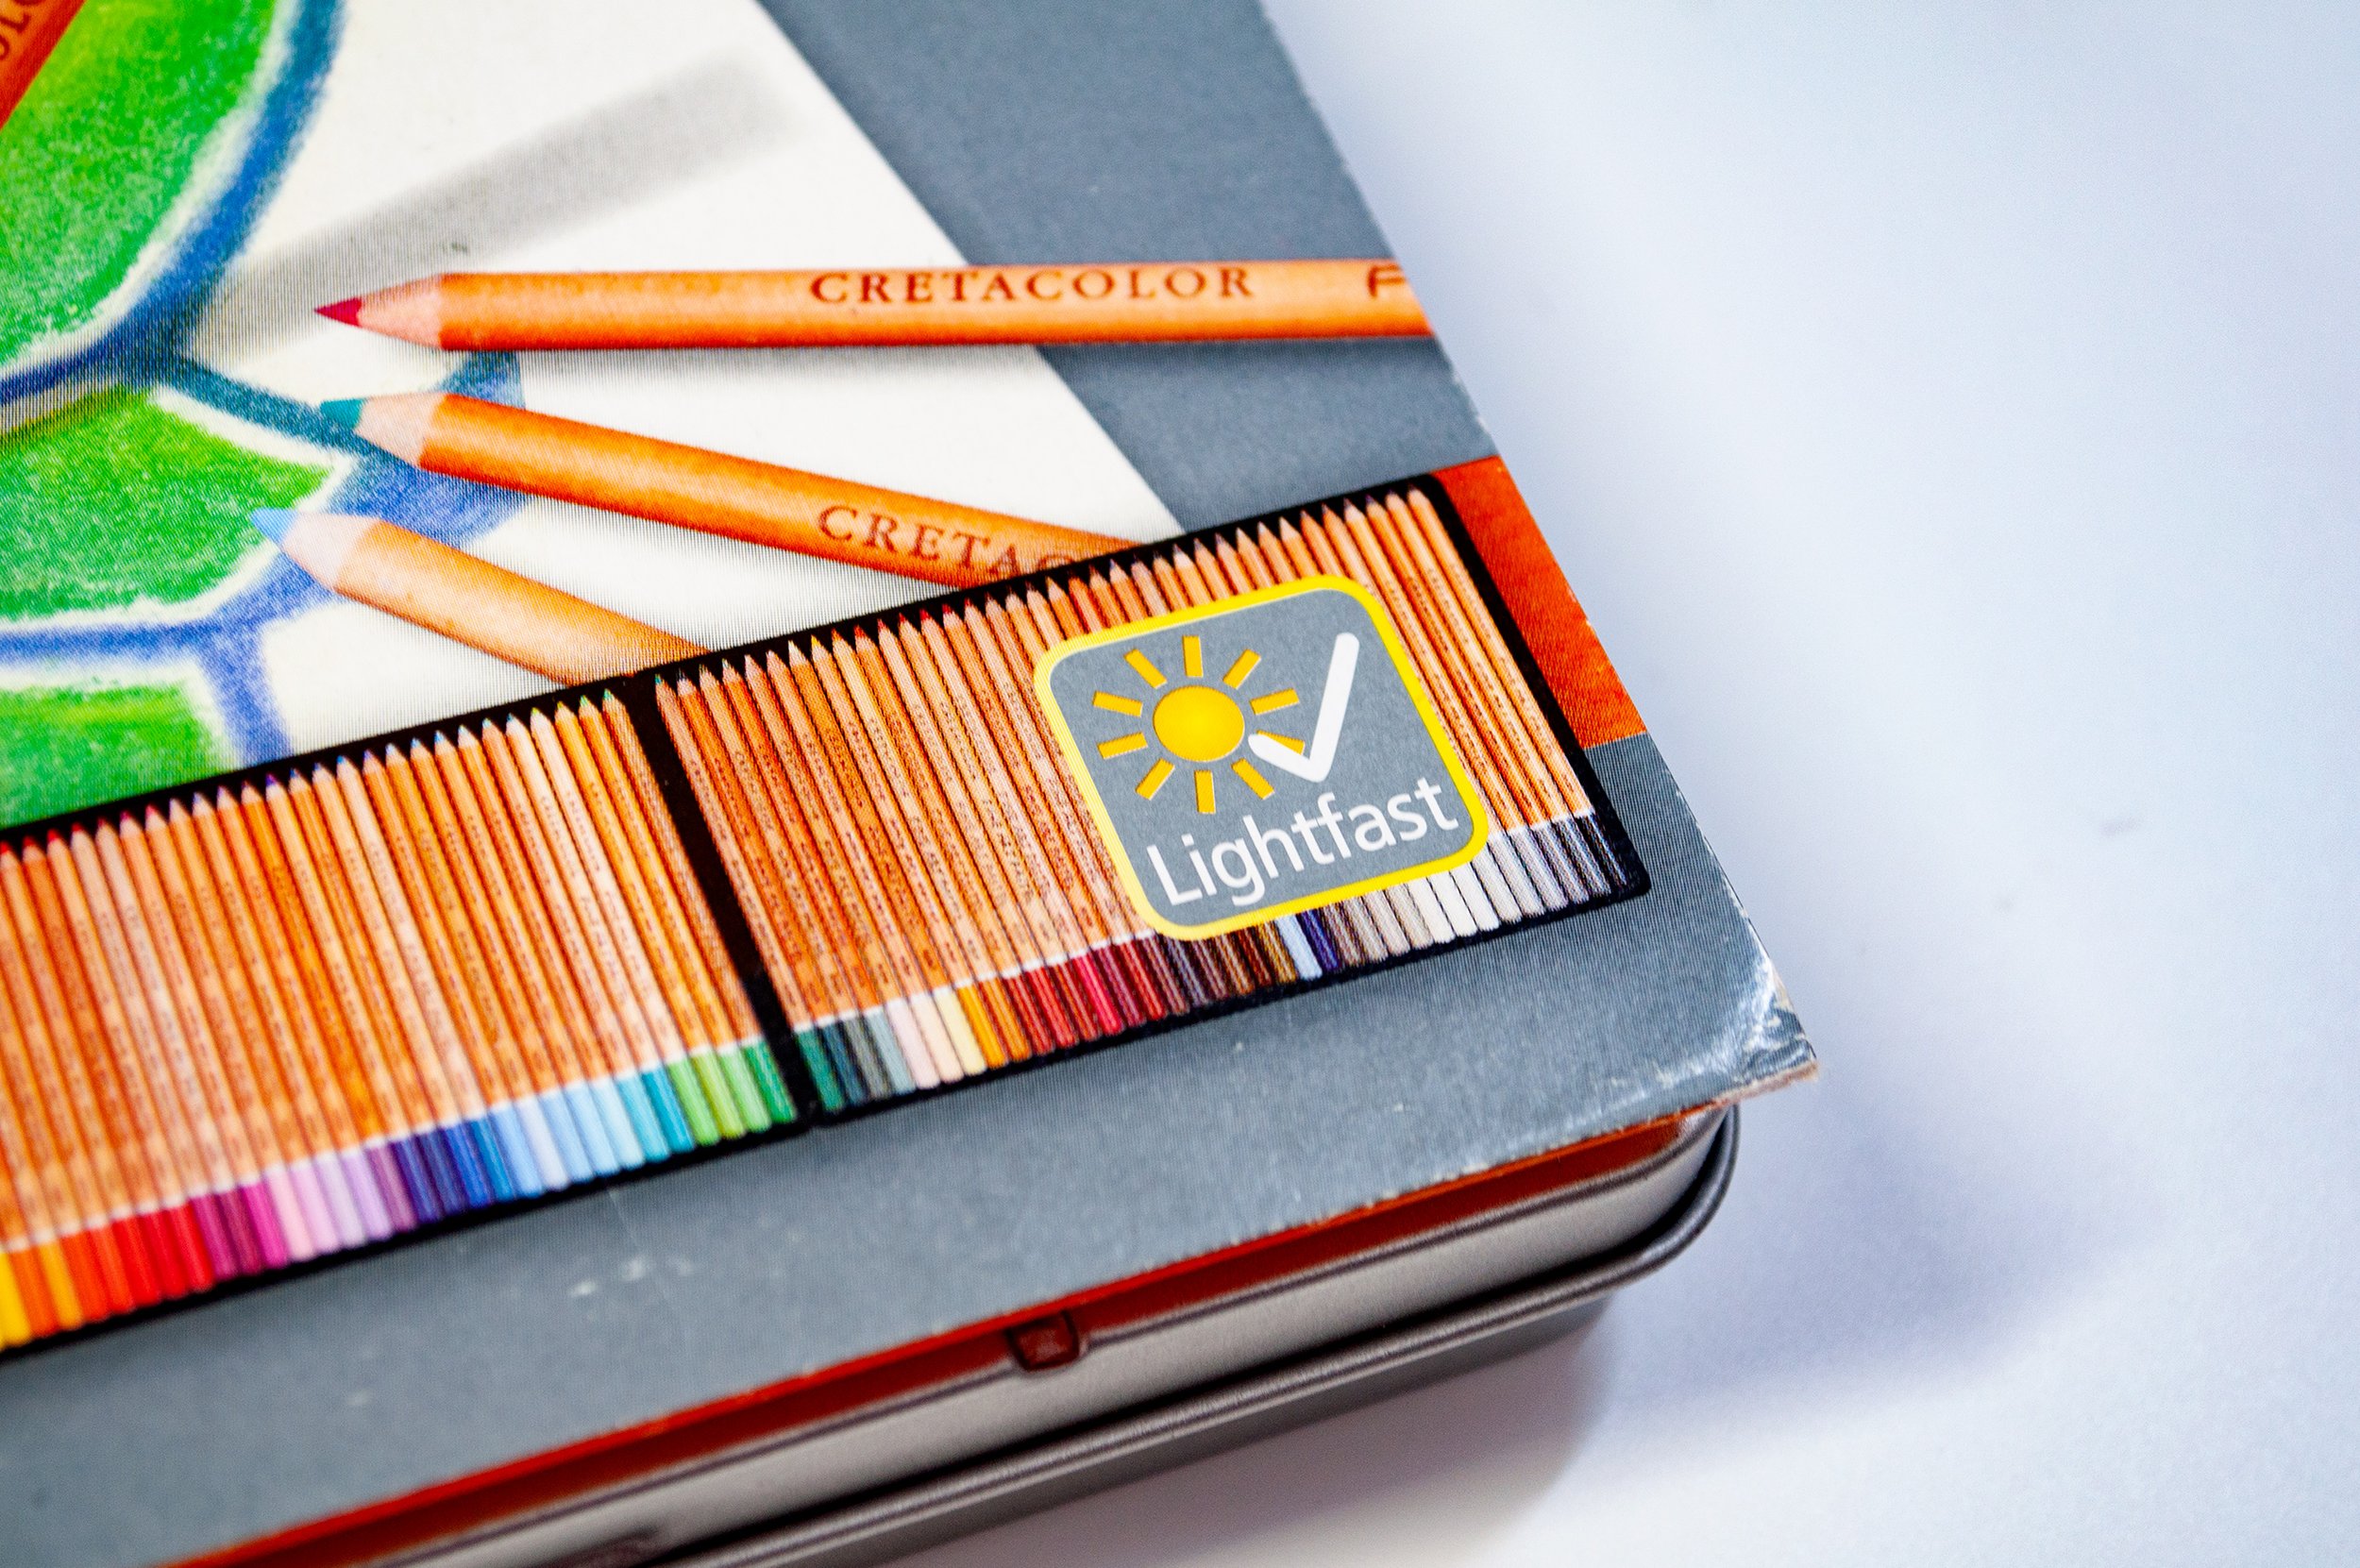 Cretacolor Pastel Pencil 24-Color Set